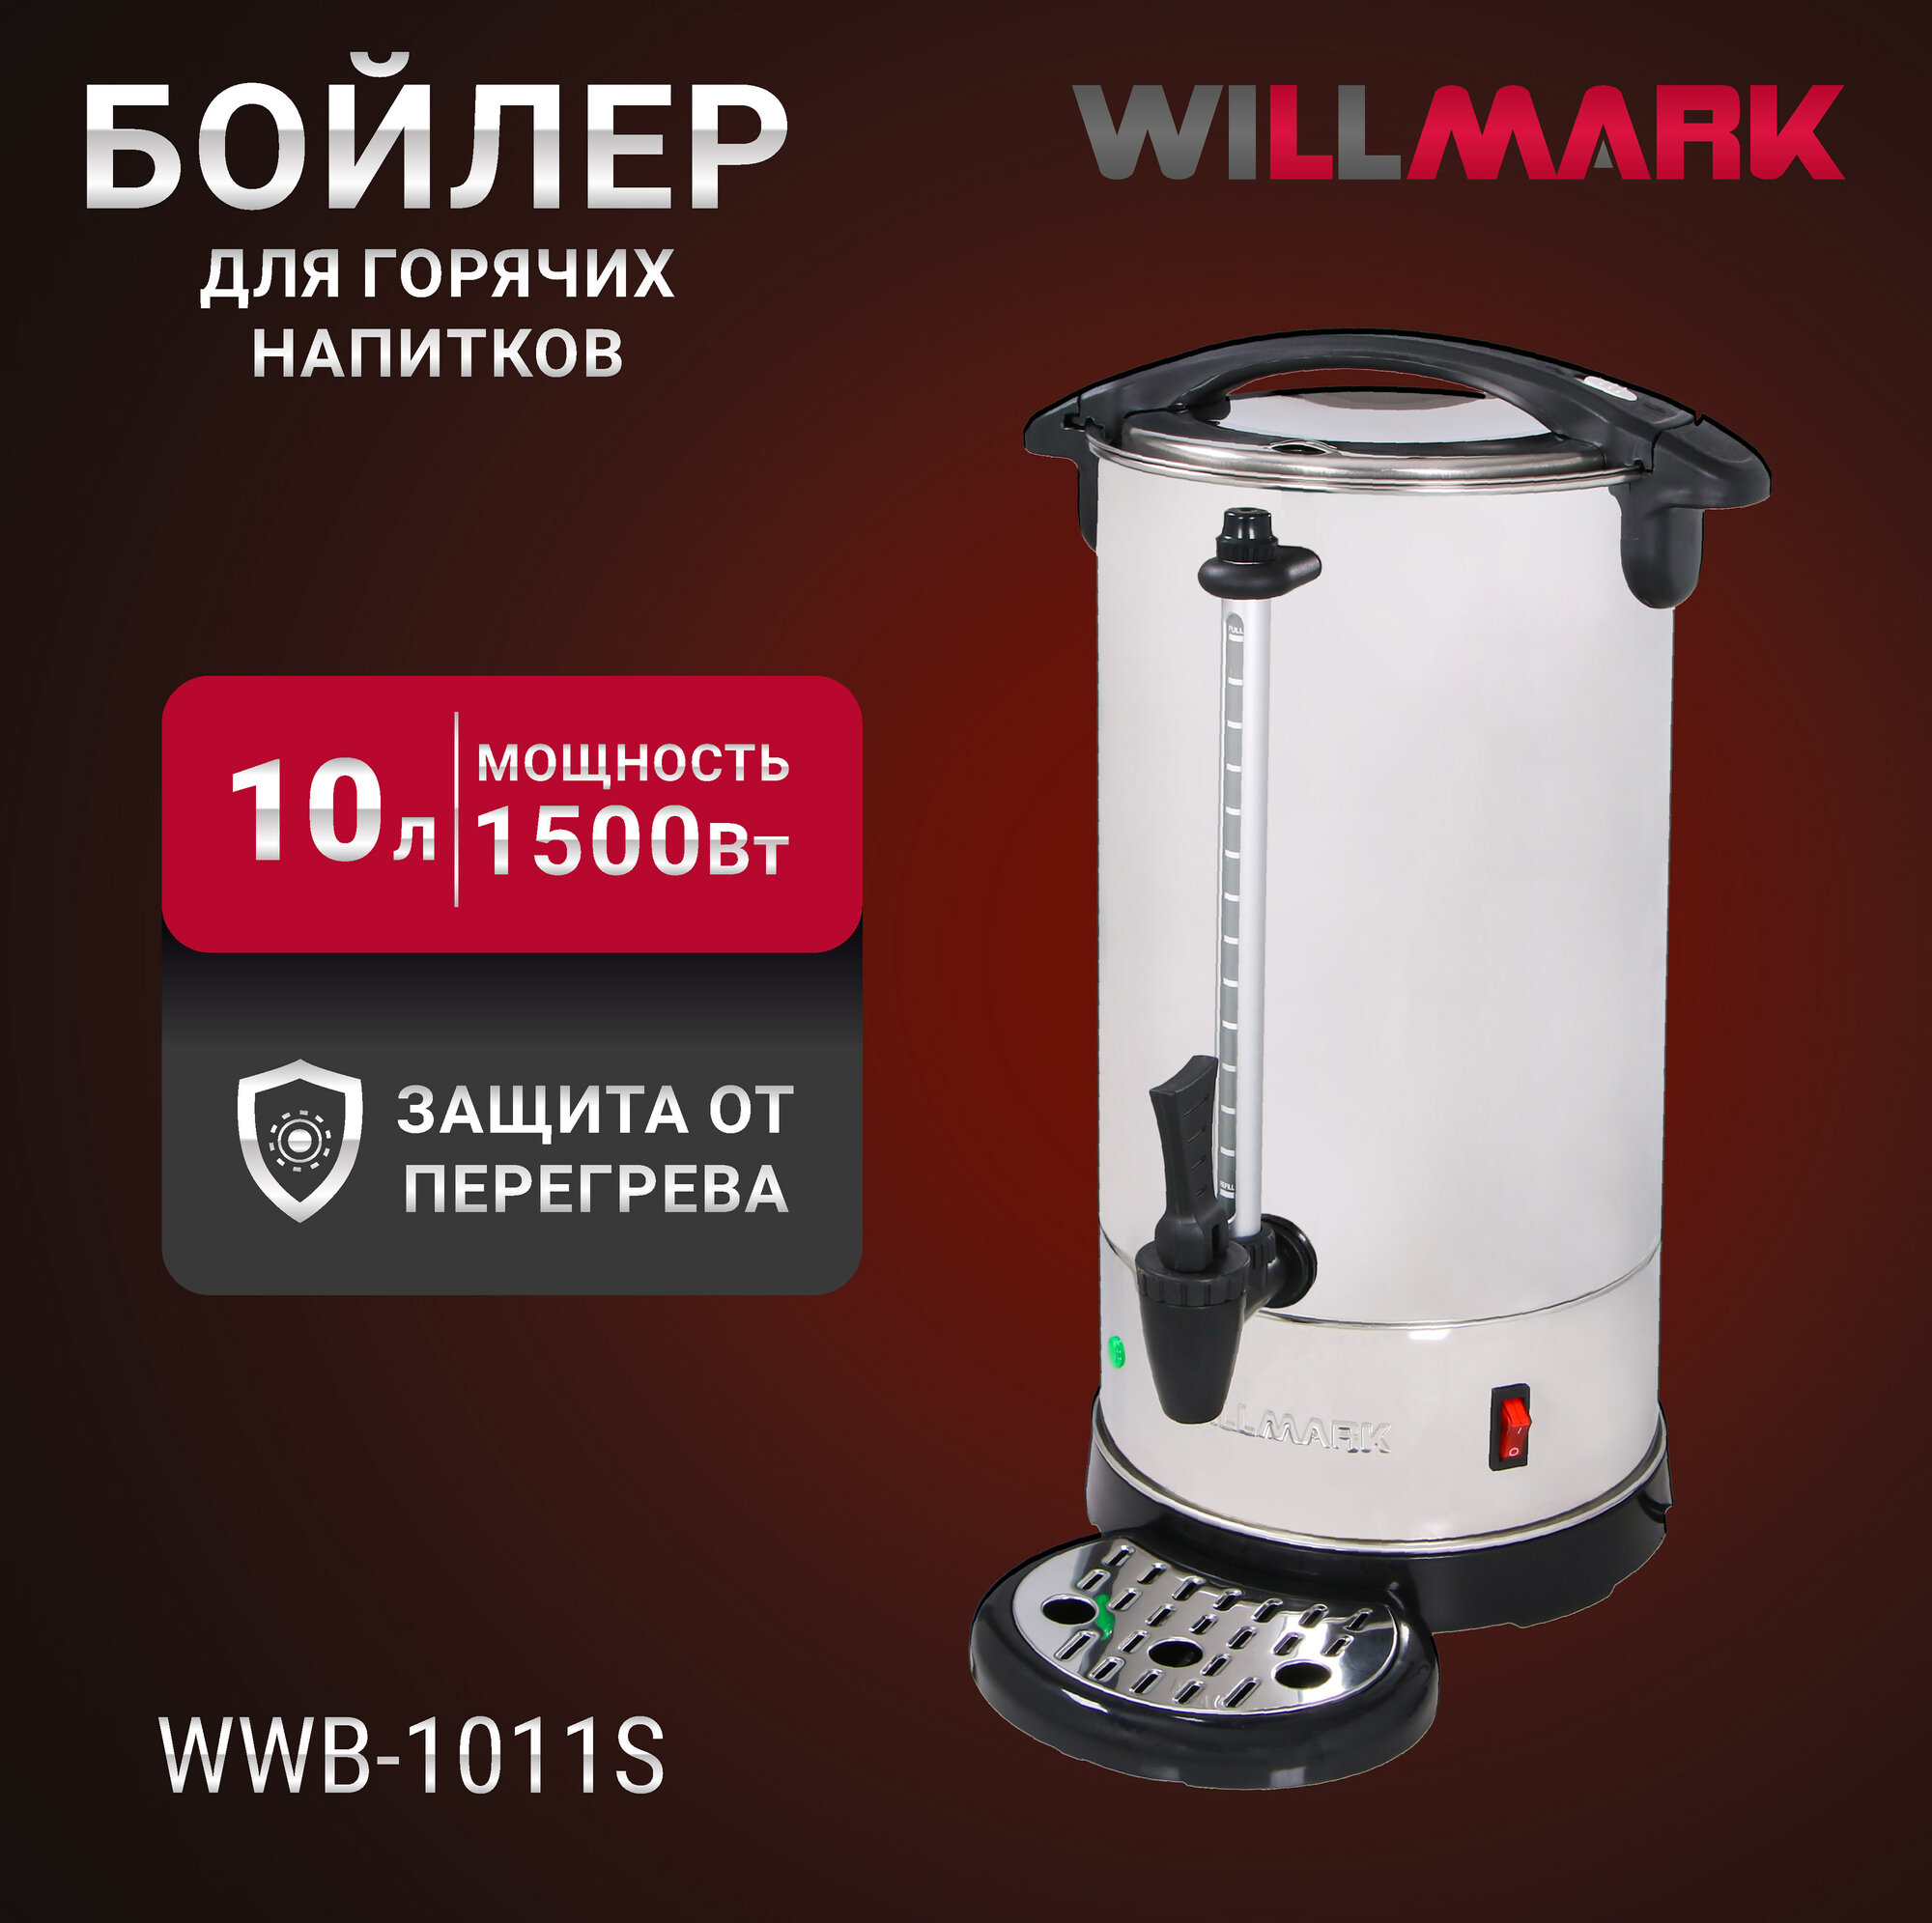 Бойлер для горячих напитков WILLMARK WWB-1011S (10л, 1500Вт, подд. темп, шкала уровня воды, мет. поддон)